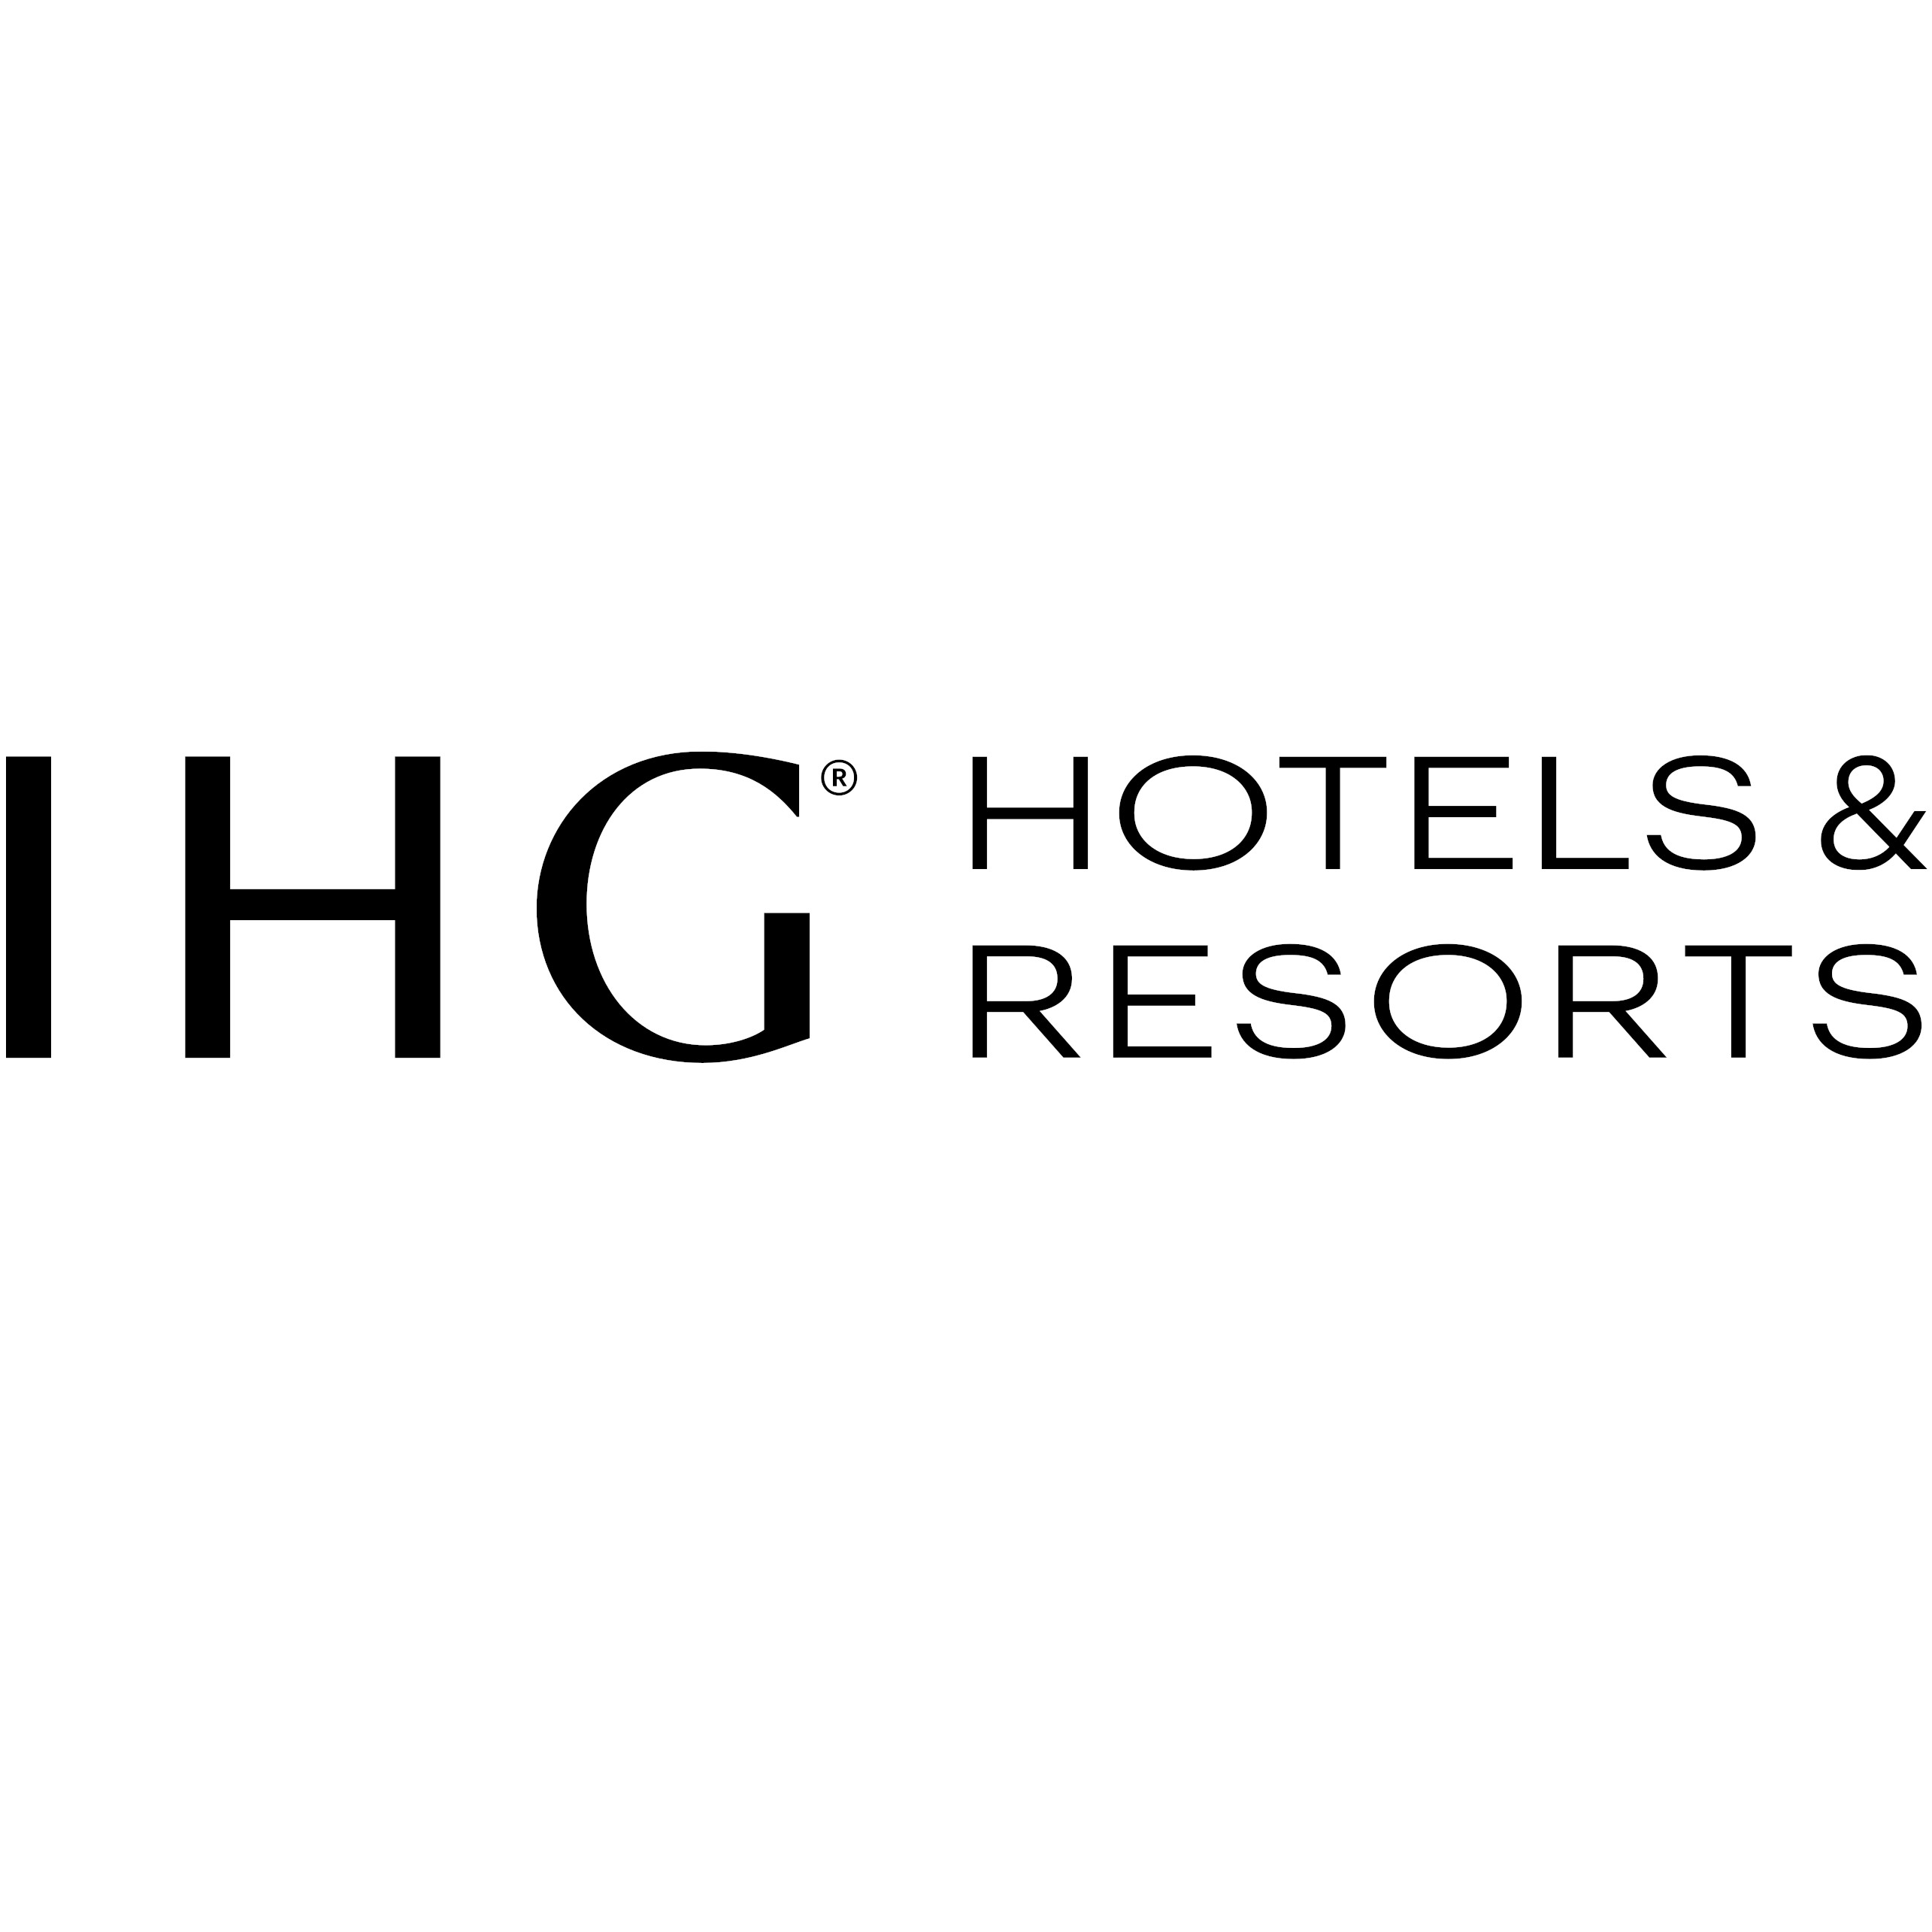 IHG Hotels & Resorts Logo1x1